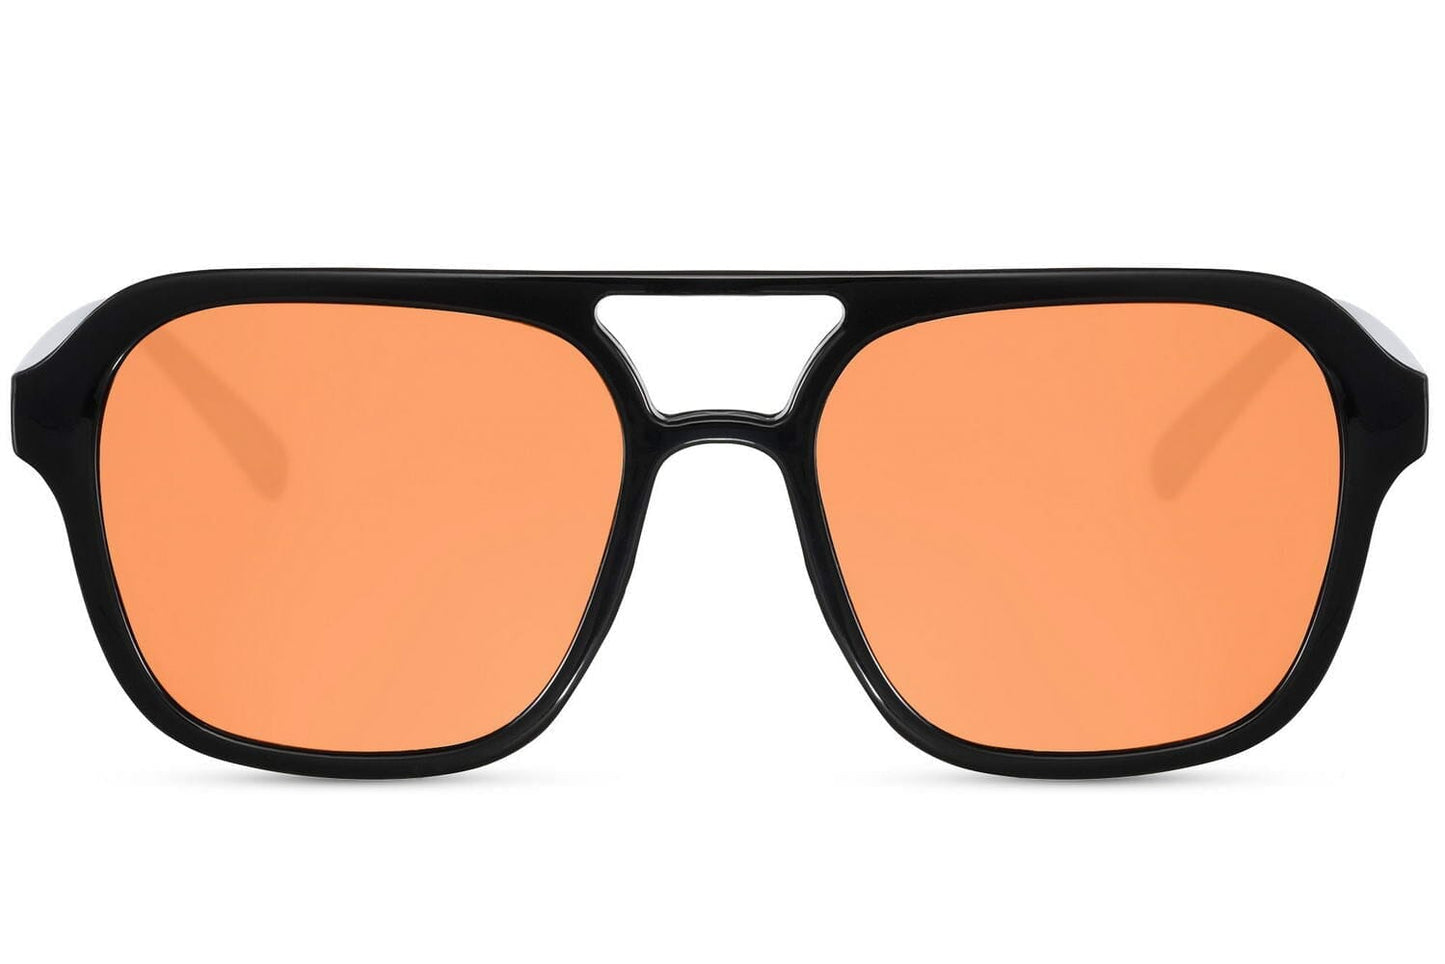 Orange lens sunglasses. Black frames. UV400 protected. Aviator style..